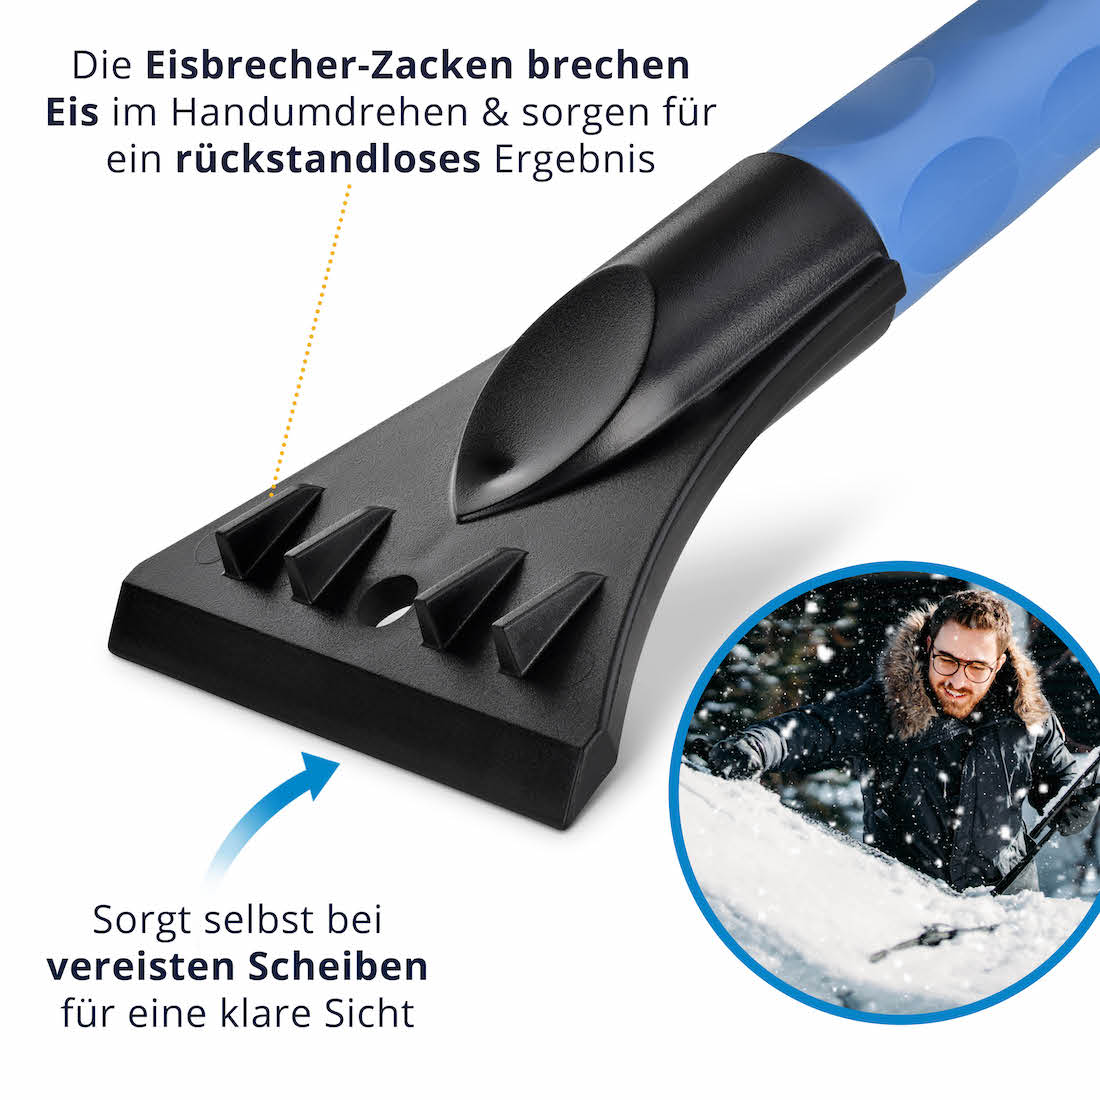 Eiskratzer Auto / Scheibenkratzer / Scheibenscharber / Schnee